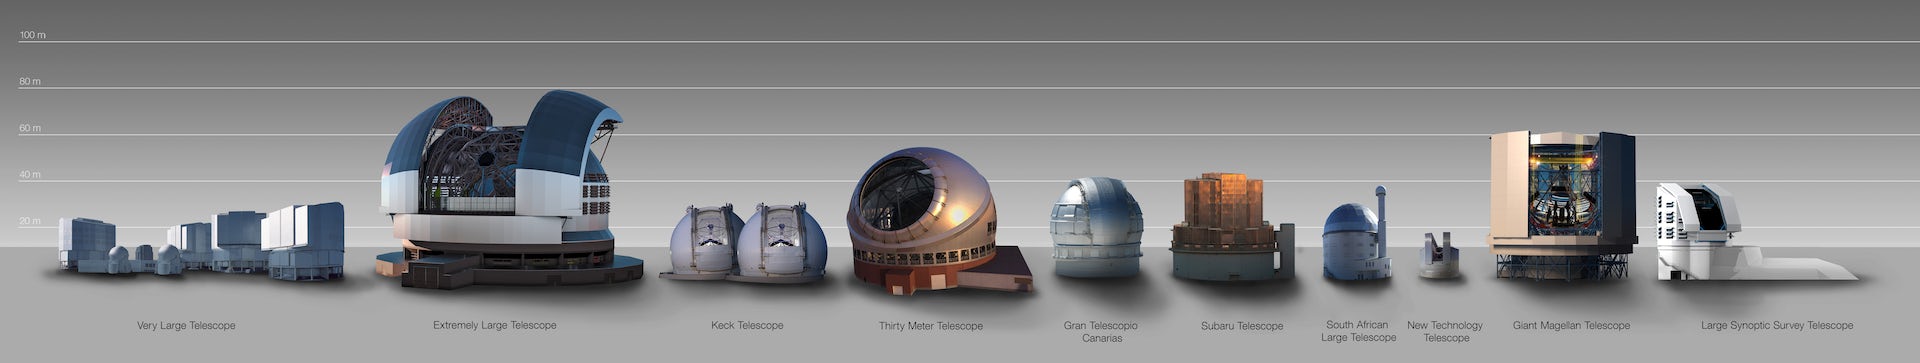 ELT 与其他望远镜圆顶之间的尺寸比较。